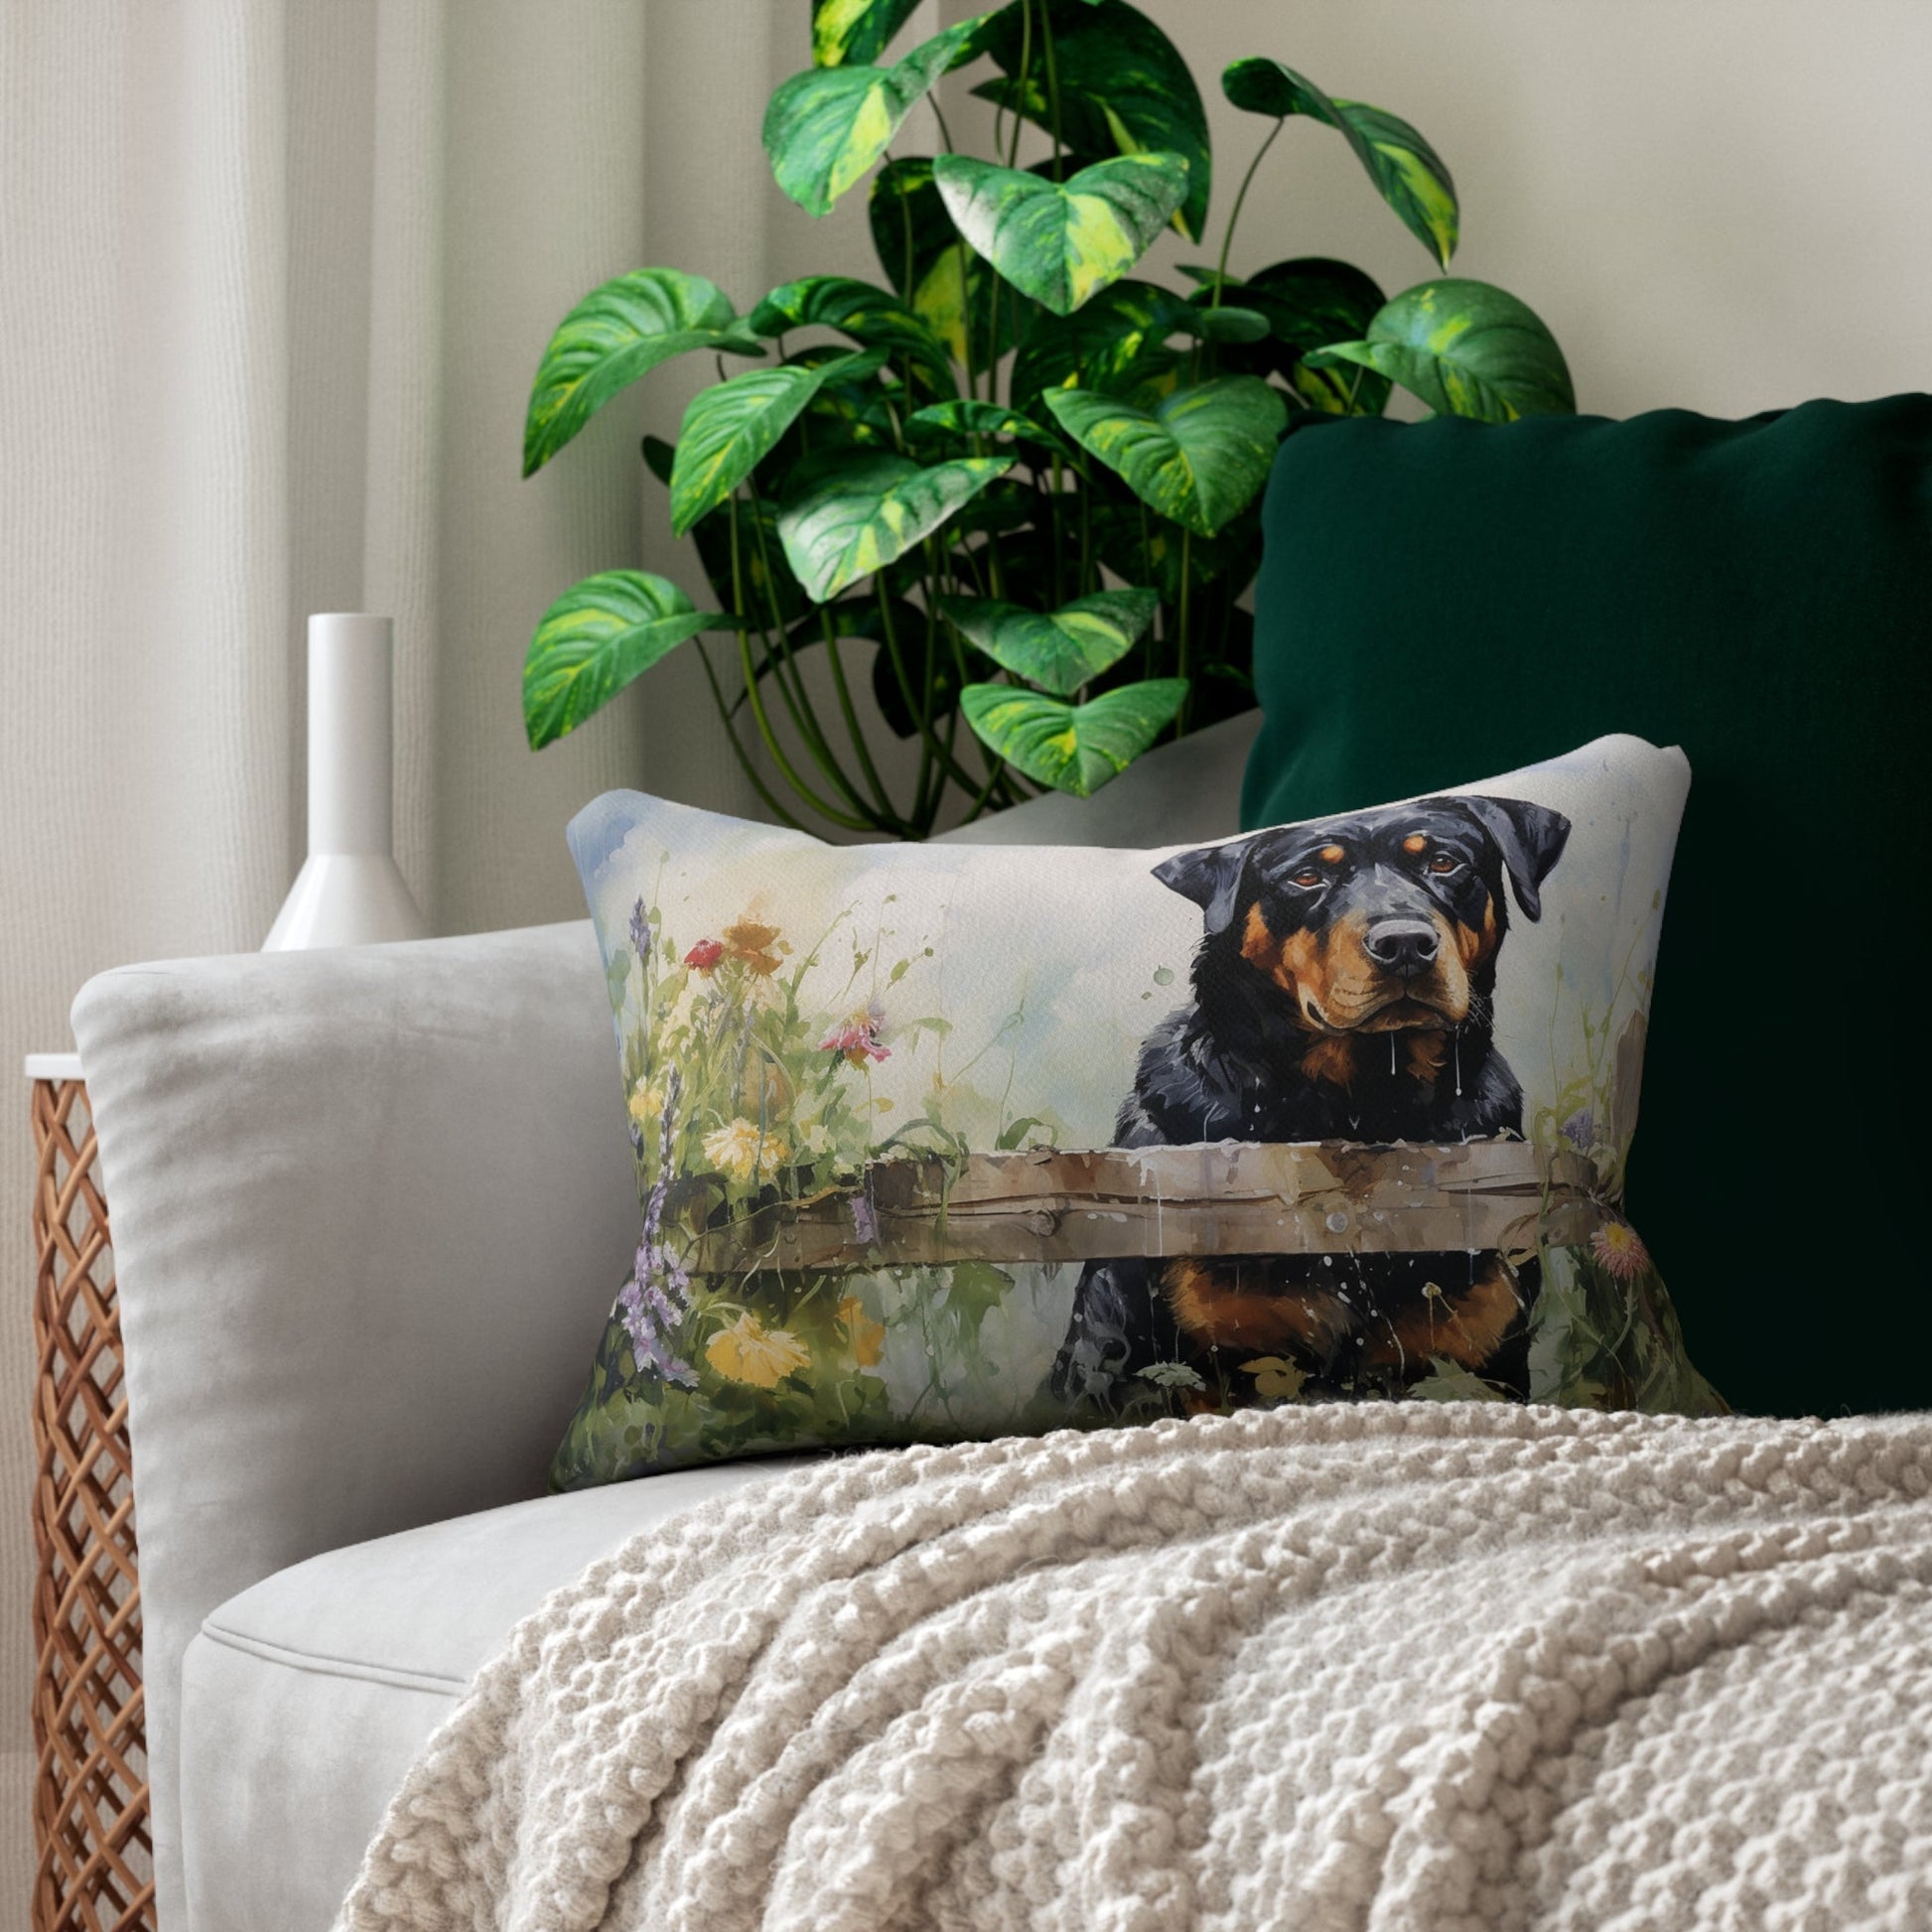 Rottweiler Dog Throw Pillow, Lumbar Pillow, Lovely Rottweiler in Garden Home, Lumbar Support Unique Home Accent Pillow, Elegant Any Room - FlooredByArt